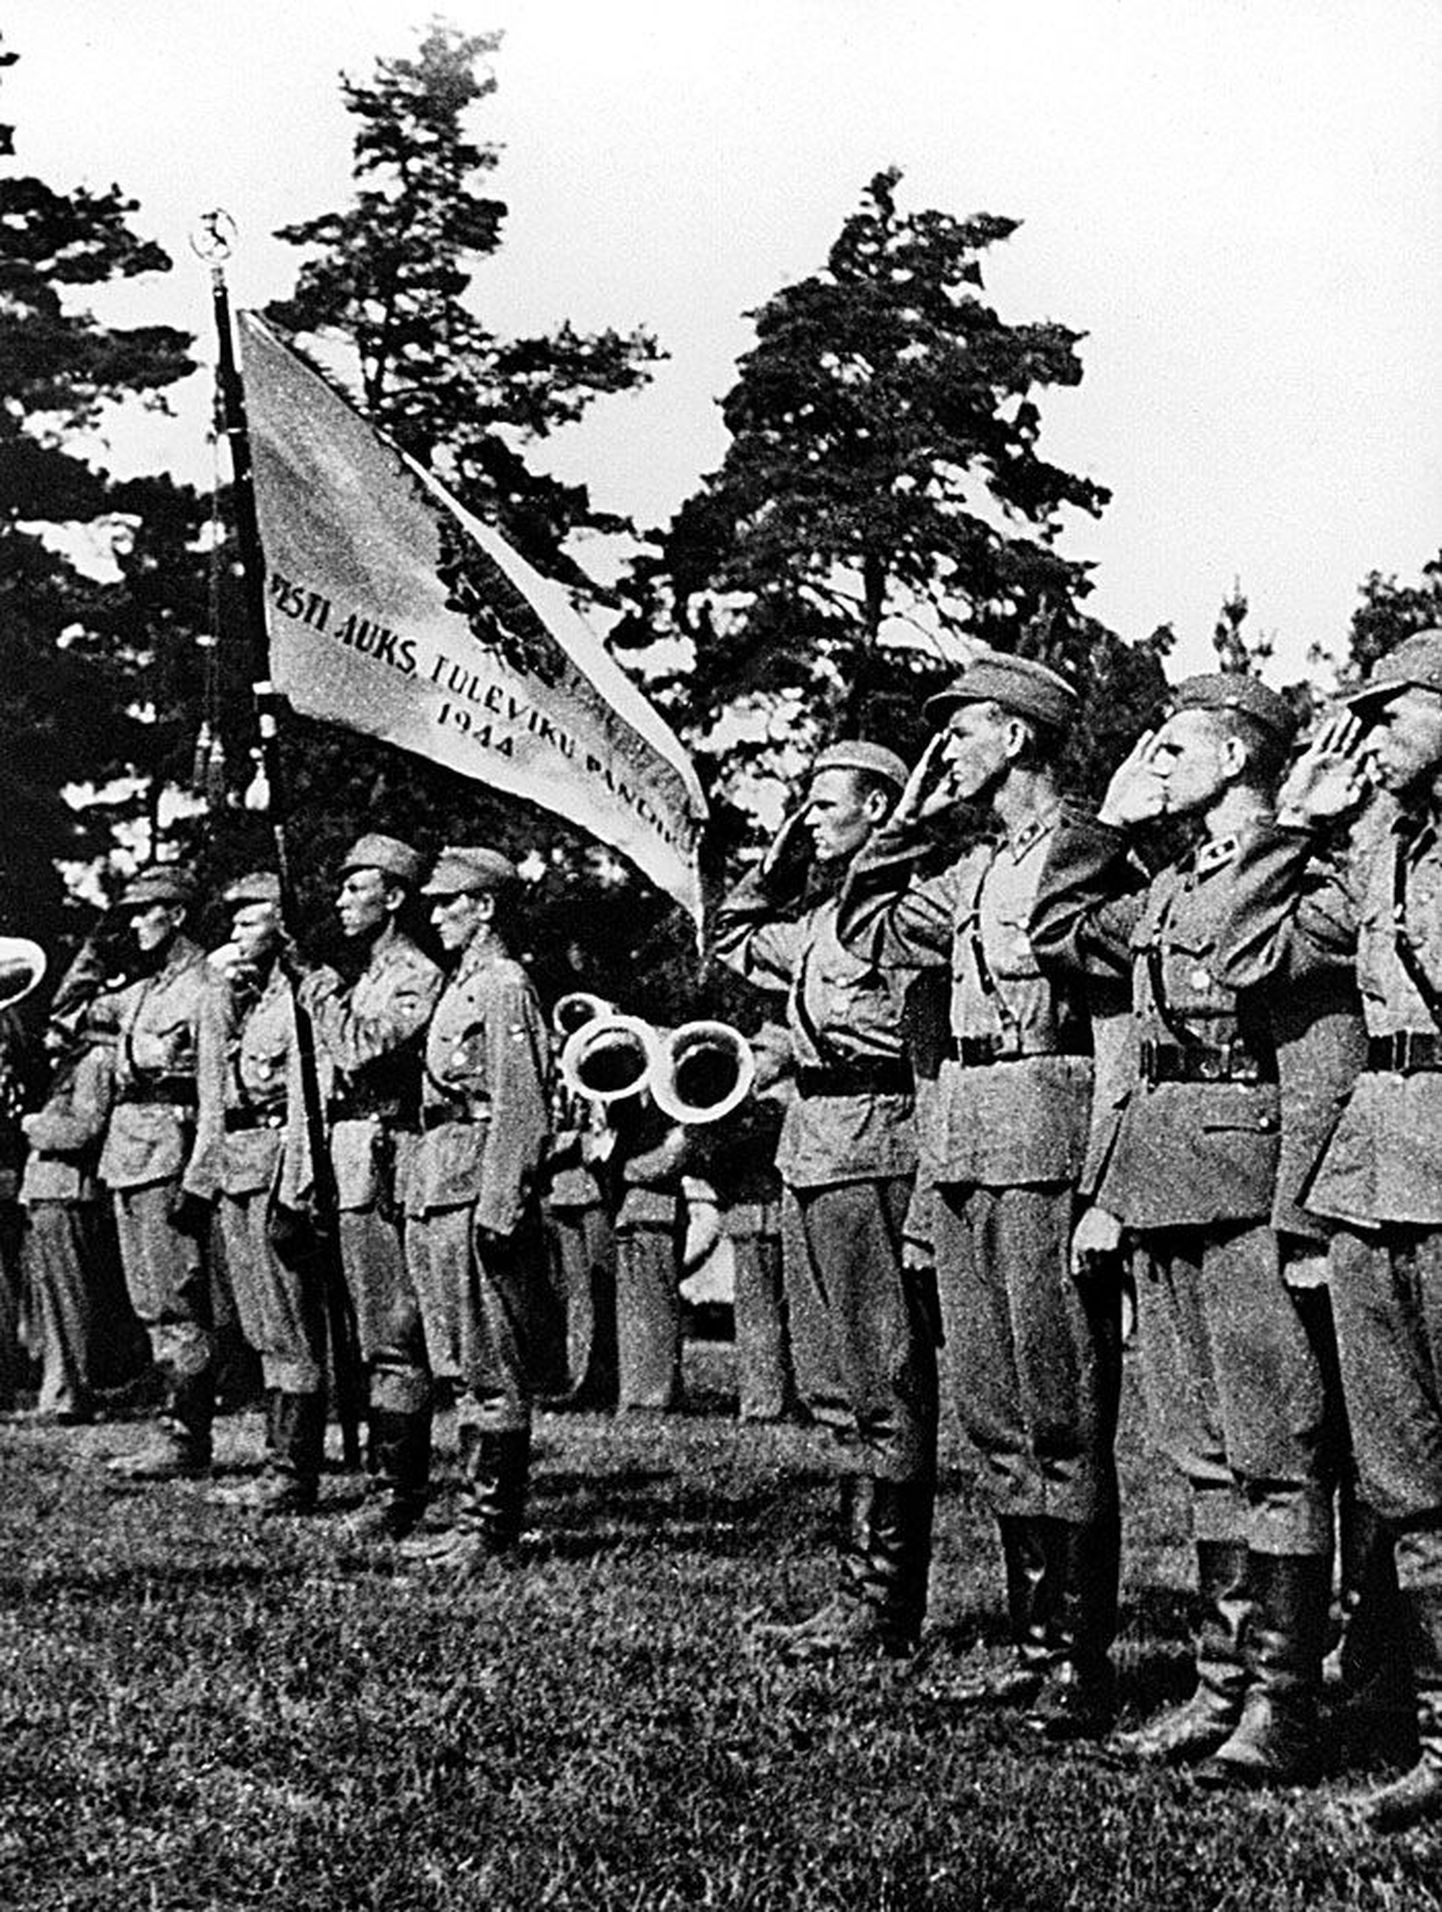 Eesti auks, tuleviku pandiks! Soomepoiste lipnikud oma lipu all pärast Soomest tagasipöördumist. 22. august 1944, Männiku.